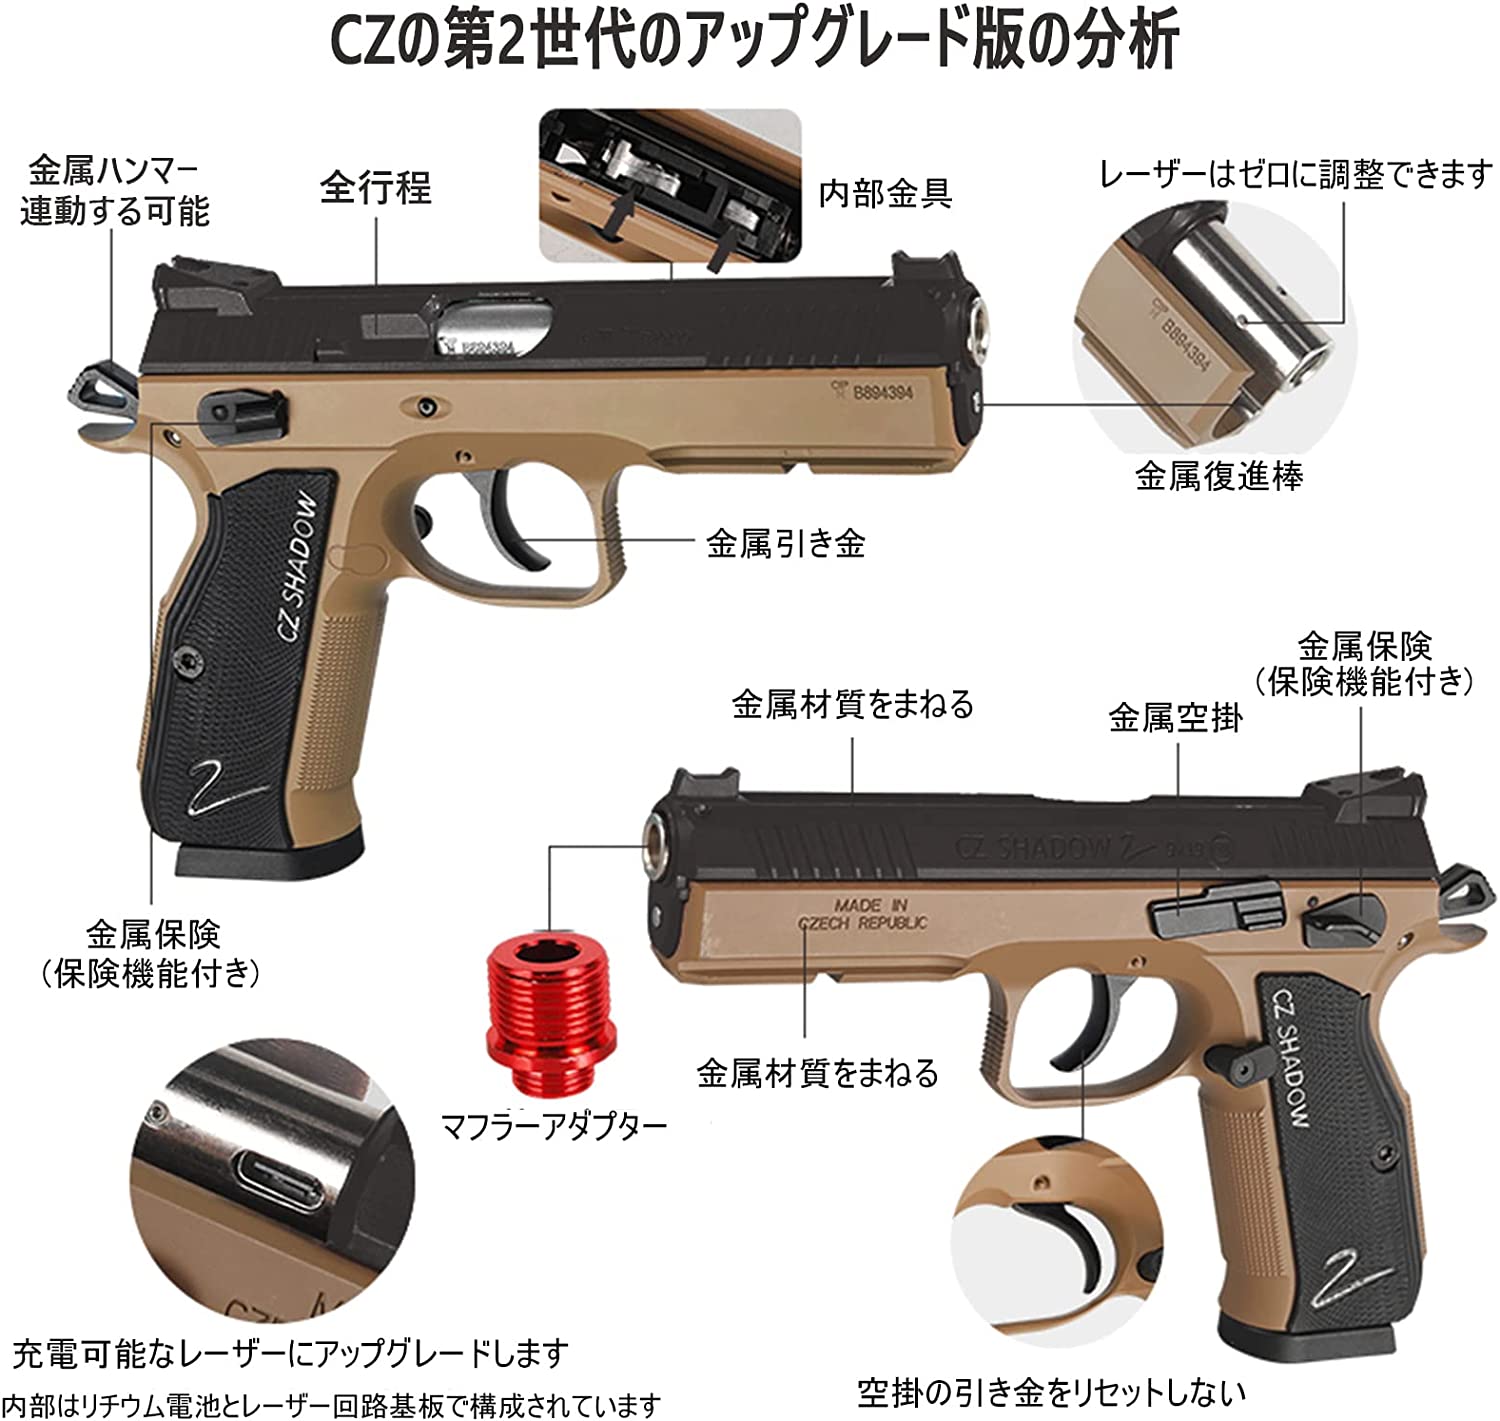 CZ75アップグレード版 カービンカバー ハンドガン風おもちゃ銃 ...